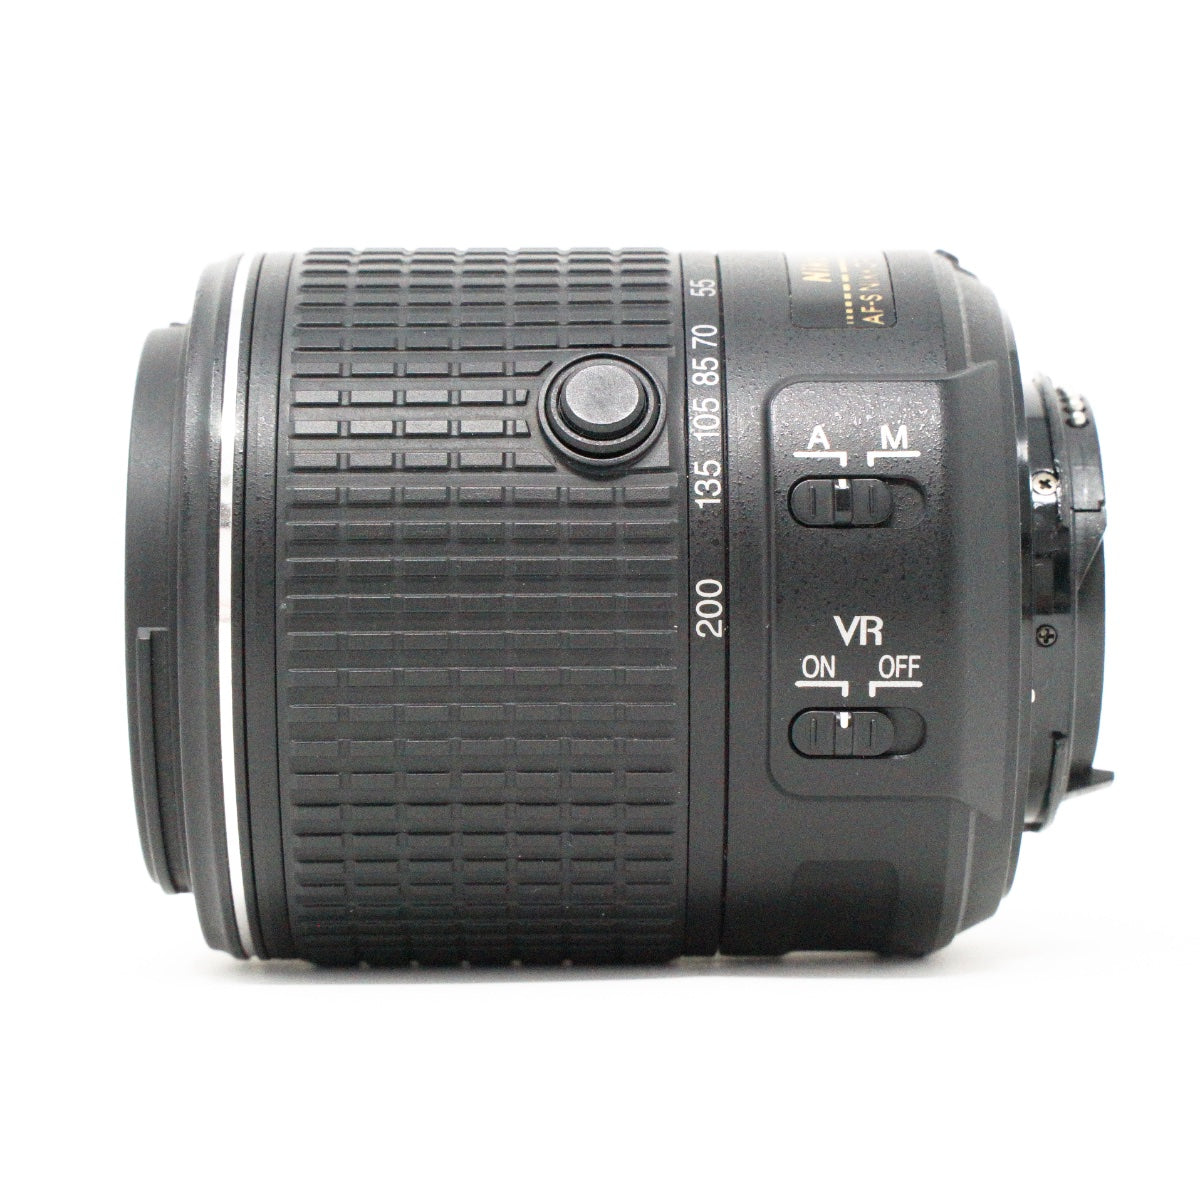 Used Nikon AF-S Nikkor 55-200mm F4-5.6G II ED VR lens